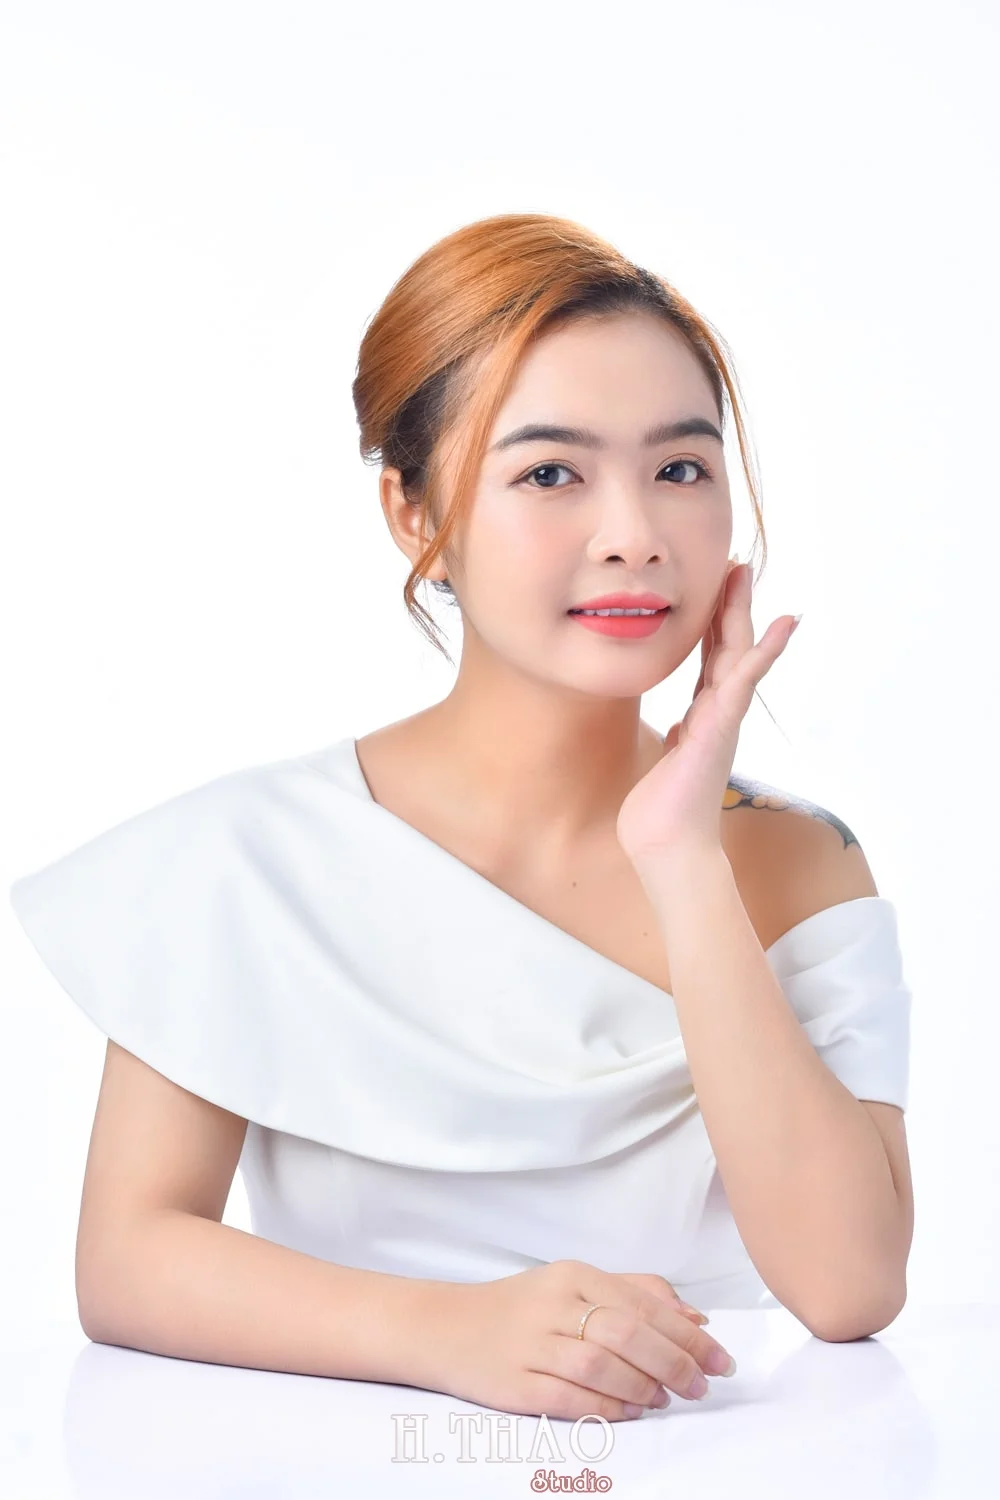 Anh doanh nhan nu 15 min - Album ảnh doanh nhân nữ phong cách beauty đẹp- HThao Studio